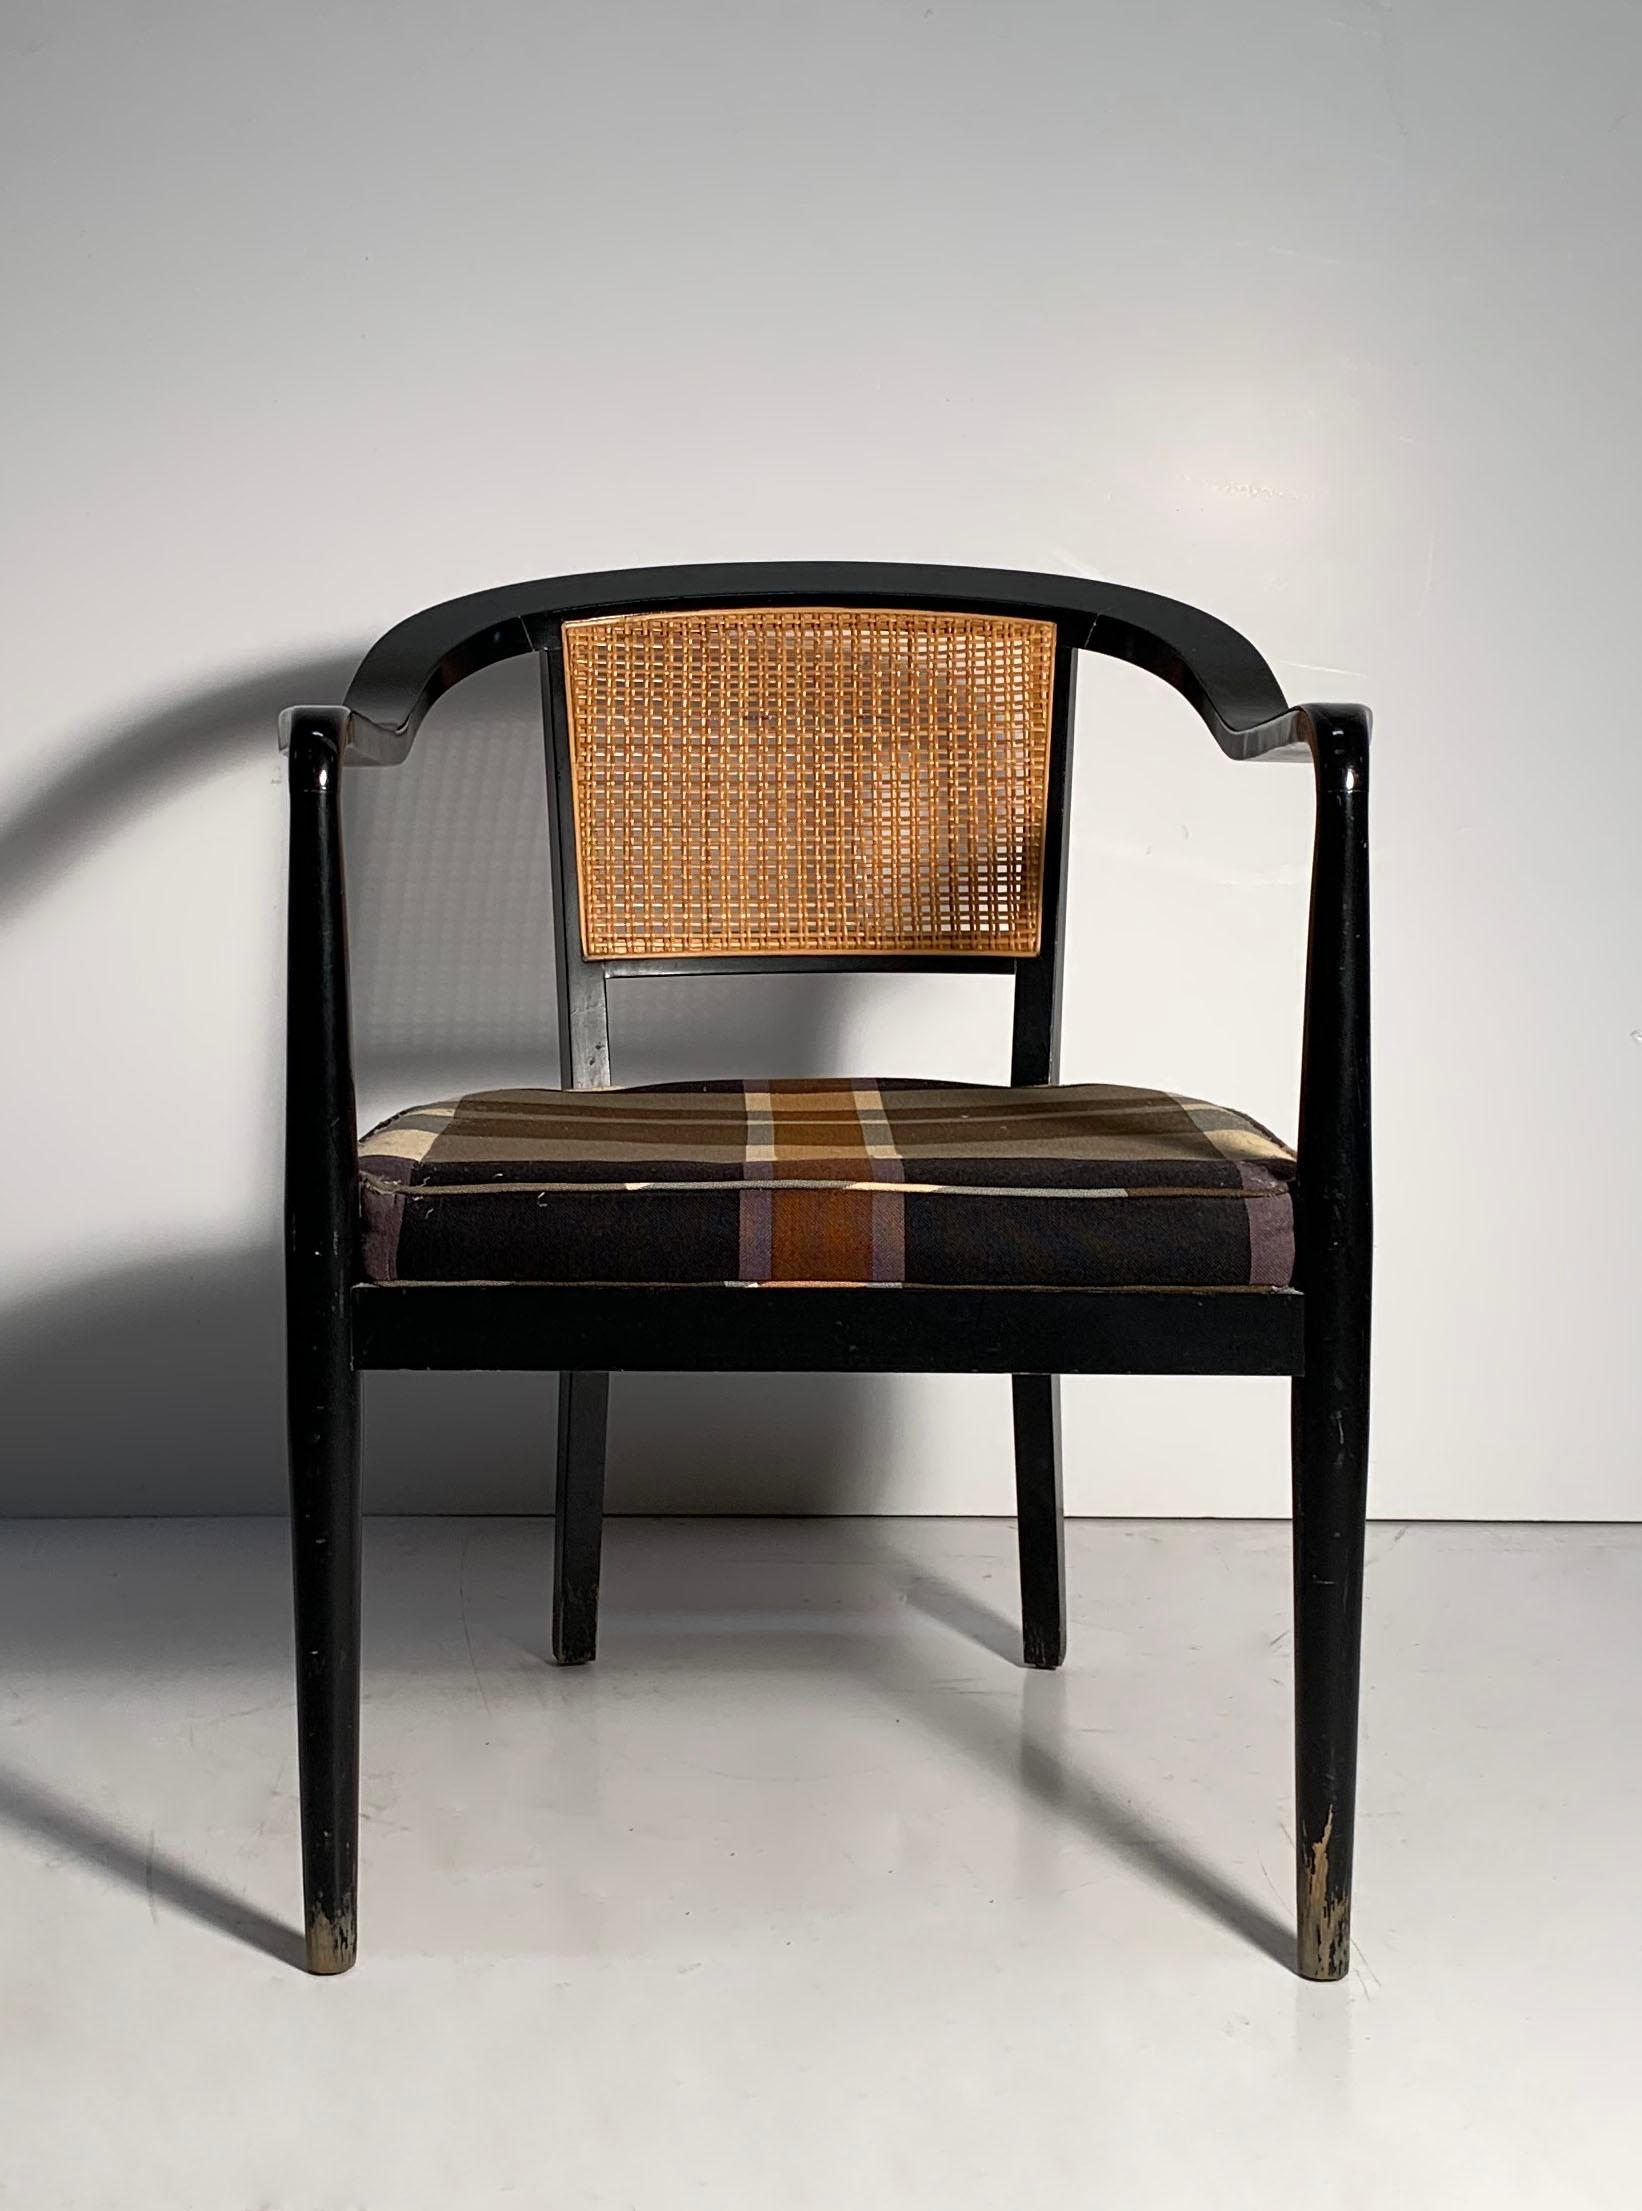 Paire de fauteuils vintage à dossier canné.

Un modèle similaire est apparu dans un Architectural Digest de 1954.